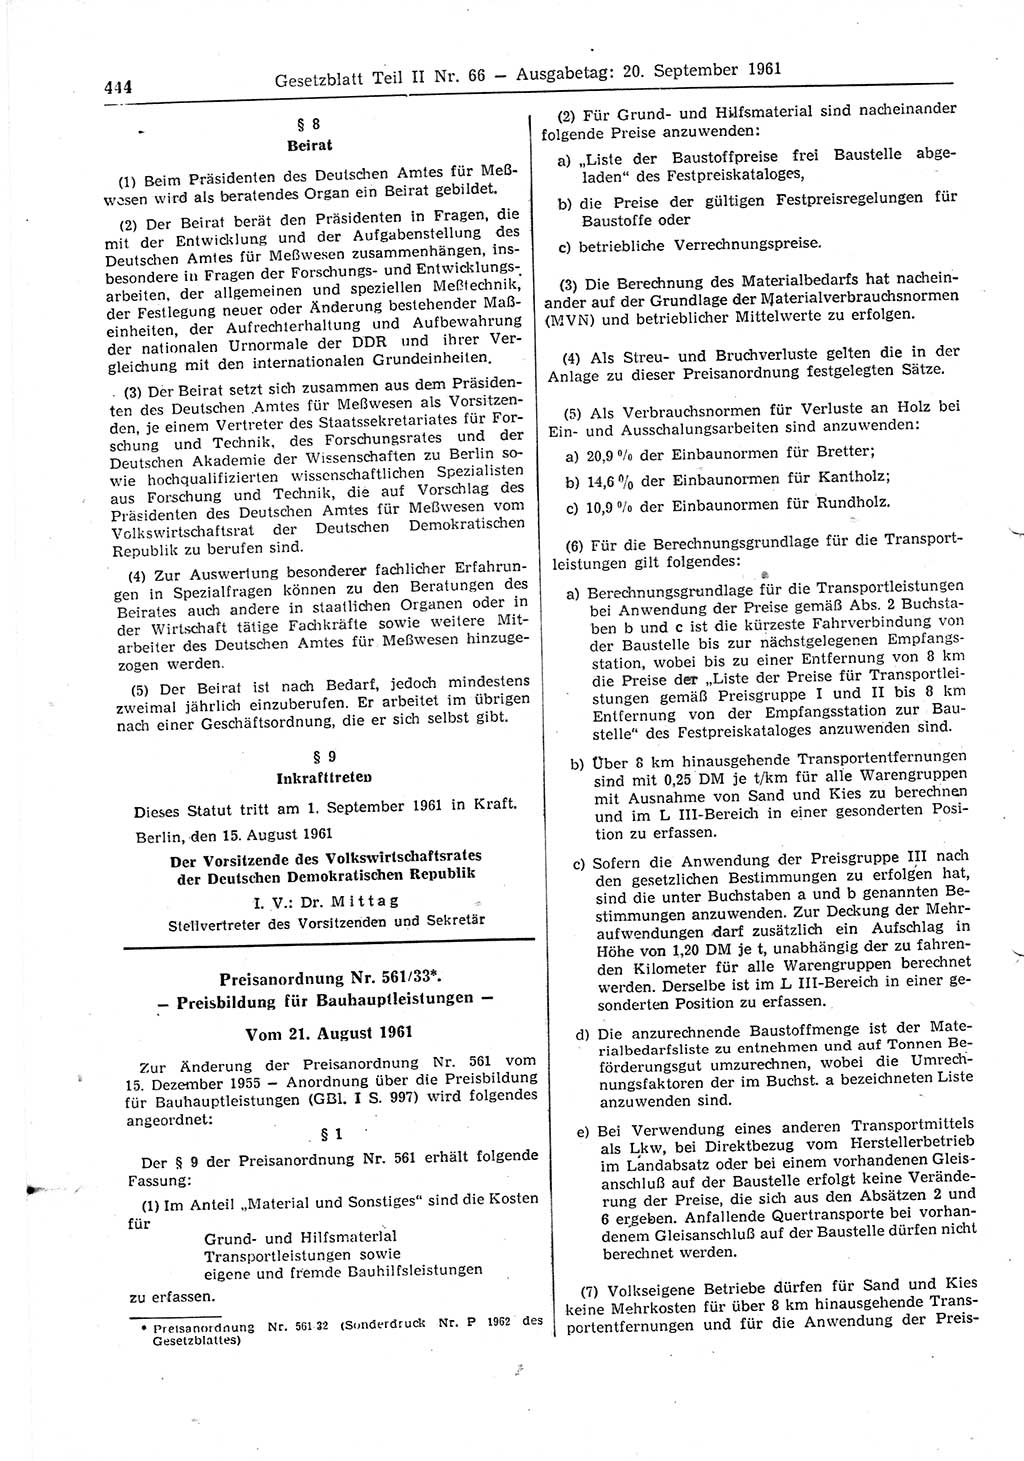 Gesetzblatt (GBl.) der Deutschen Demokratischen Republik (DDR) Teil ⅠⅠ 1961, Seite 444 (GBl. DDR ⅠⅠ 1961, S. 444)